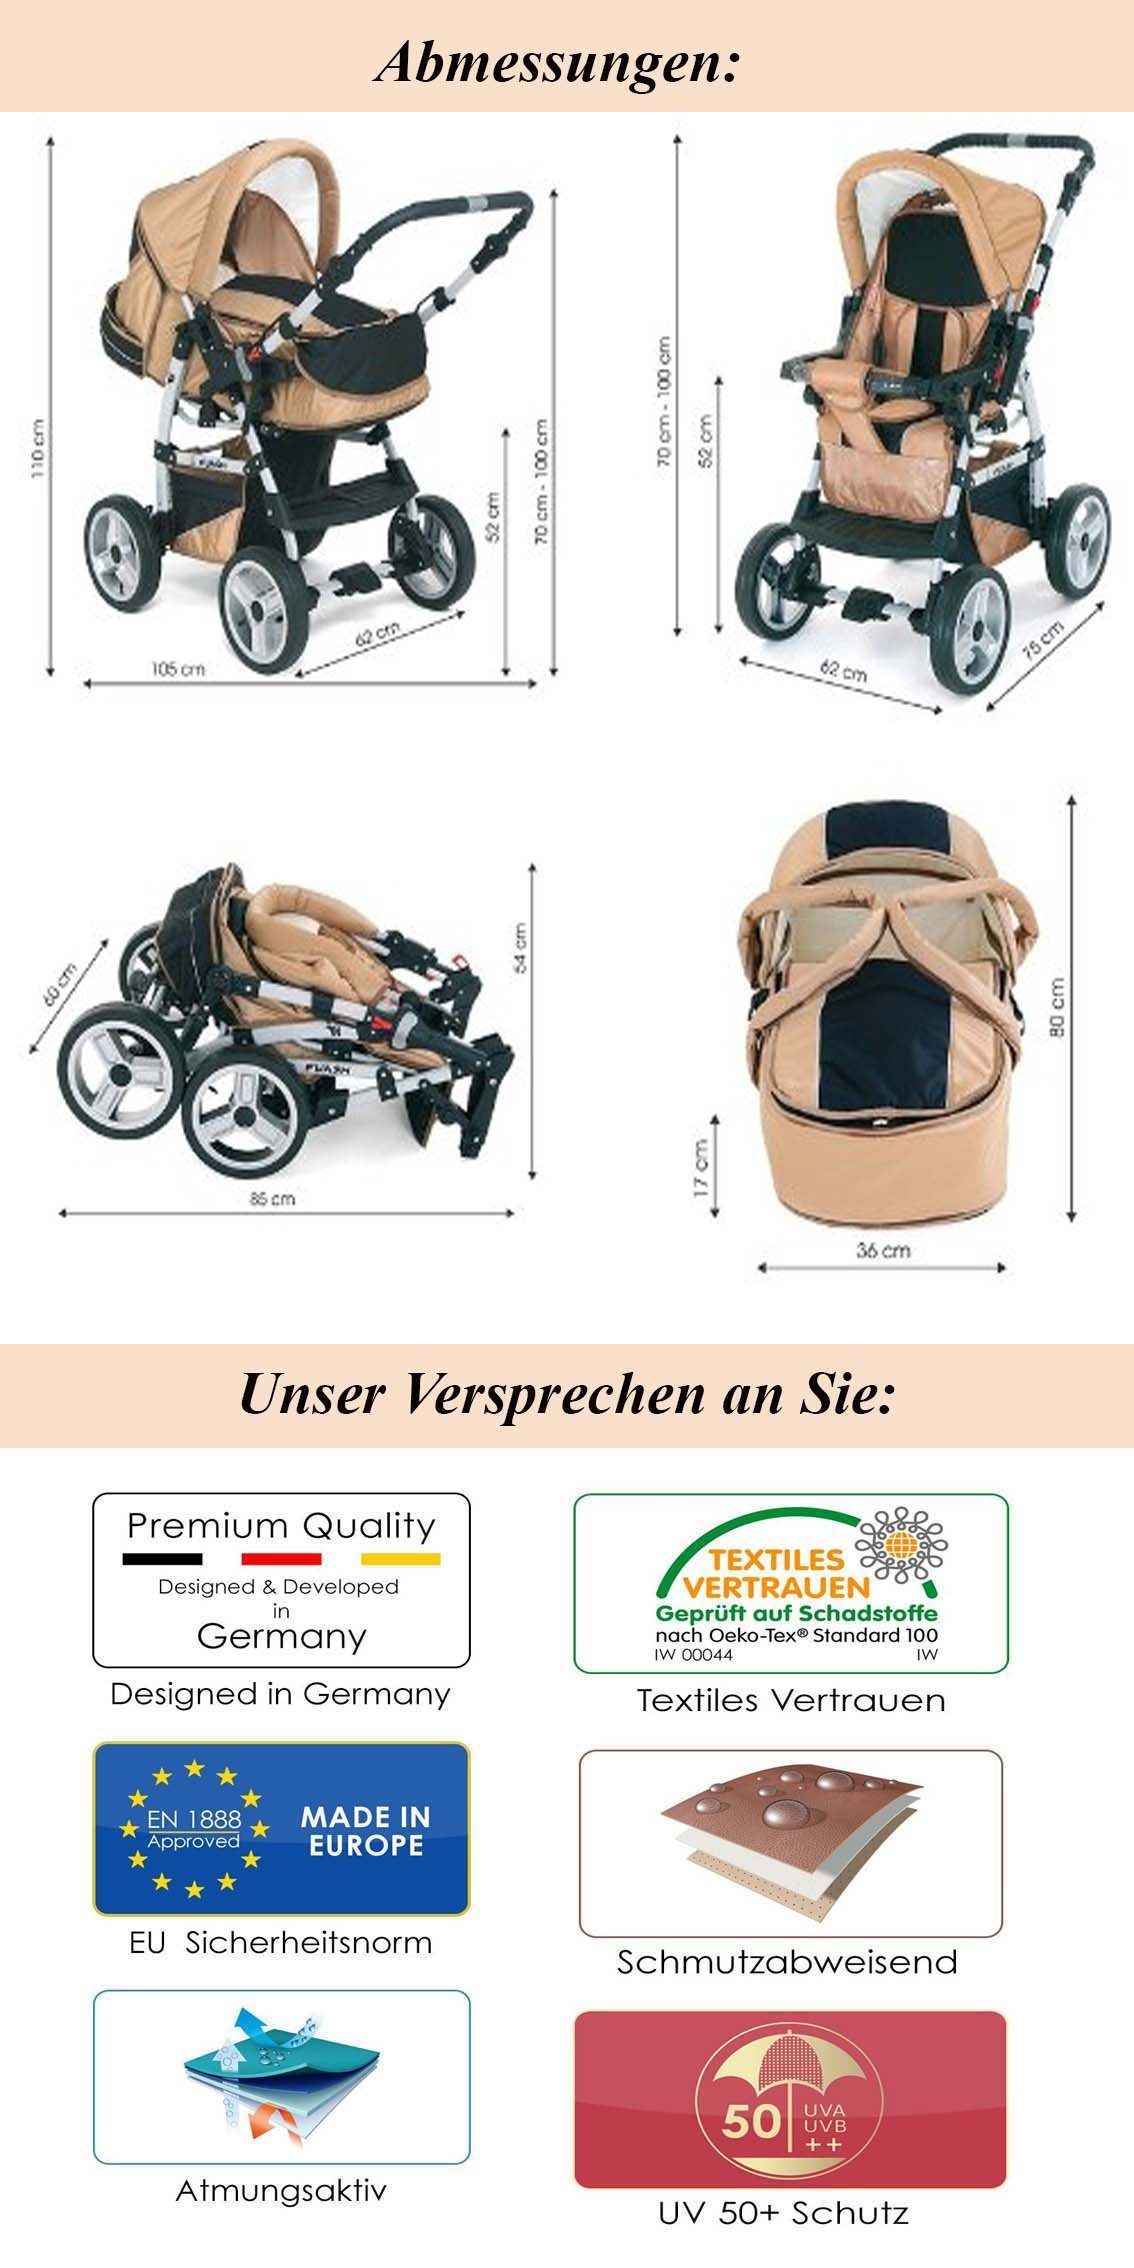 Teile Kombi-Kinderwagen Flash babies-on-wheels 18 - Farben 17 in Kinderwagen-Set 1 5 inkl. Braun-Creme in Autositz -